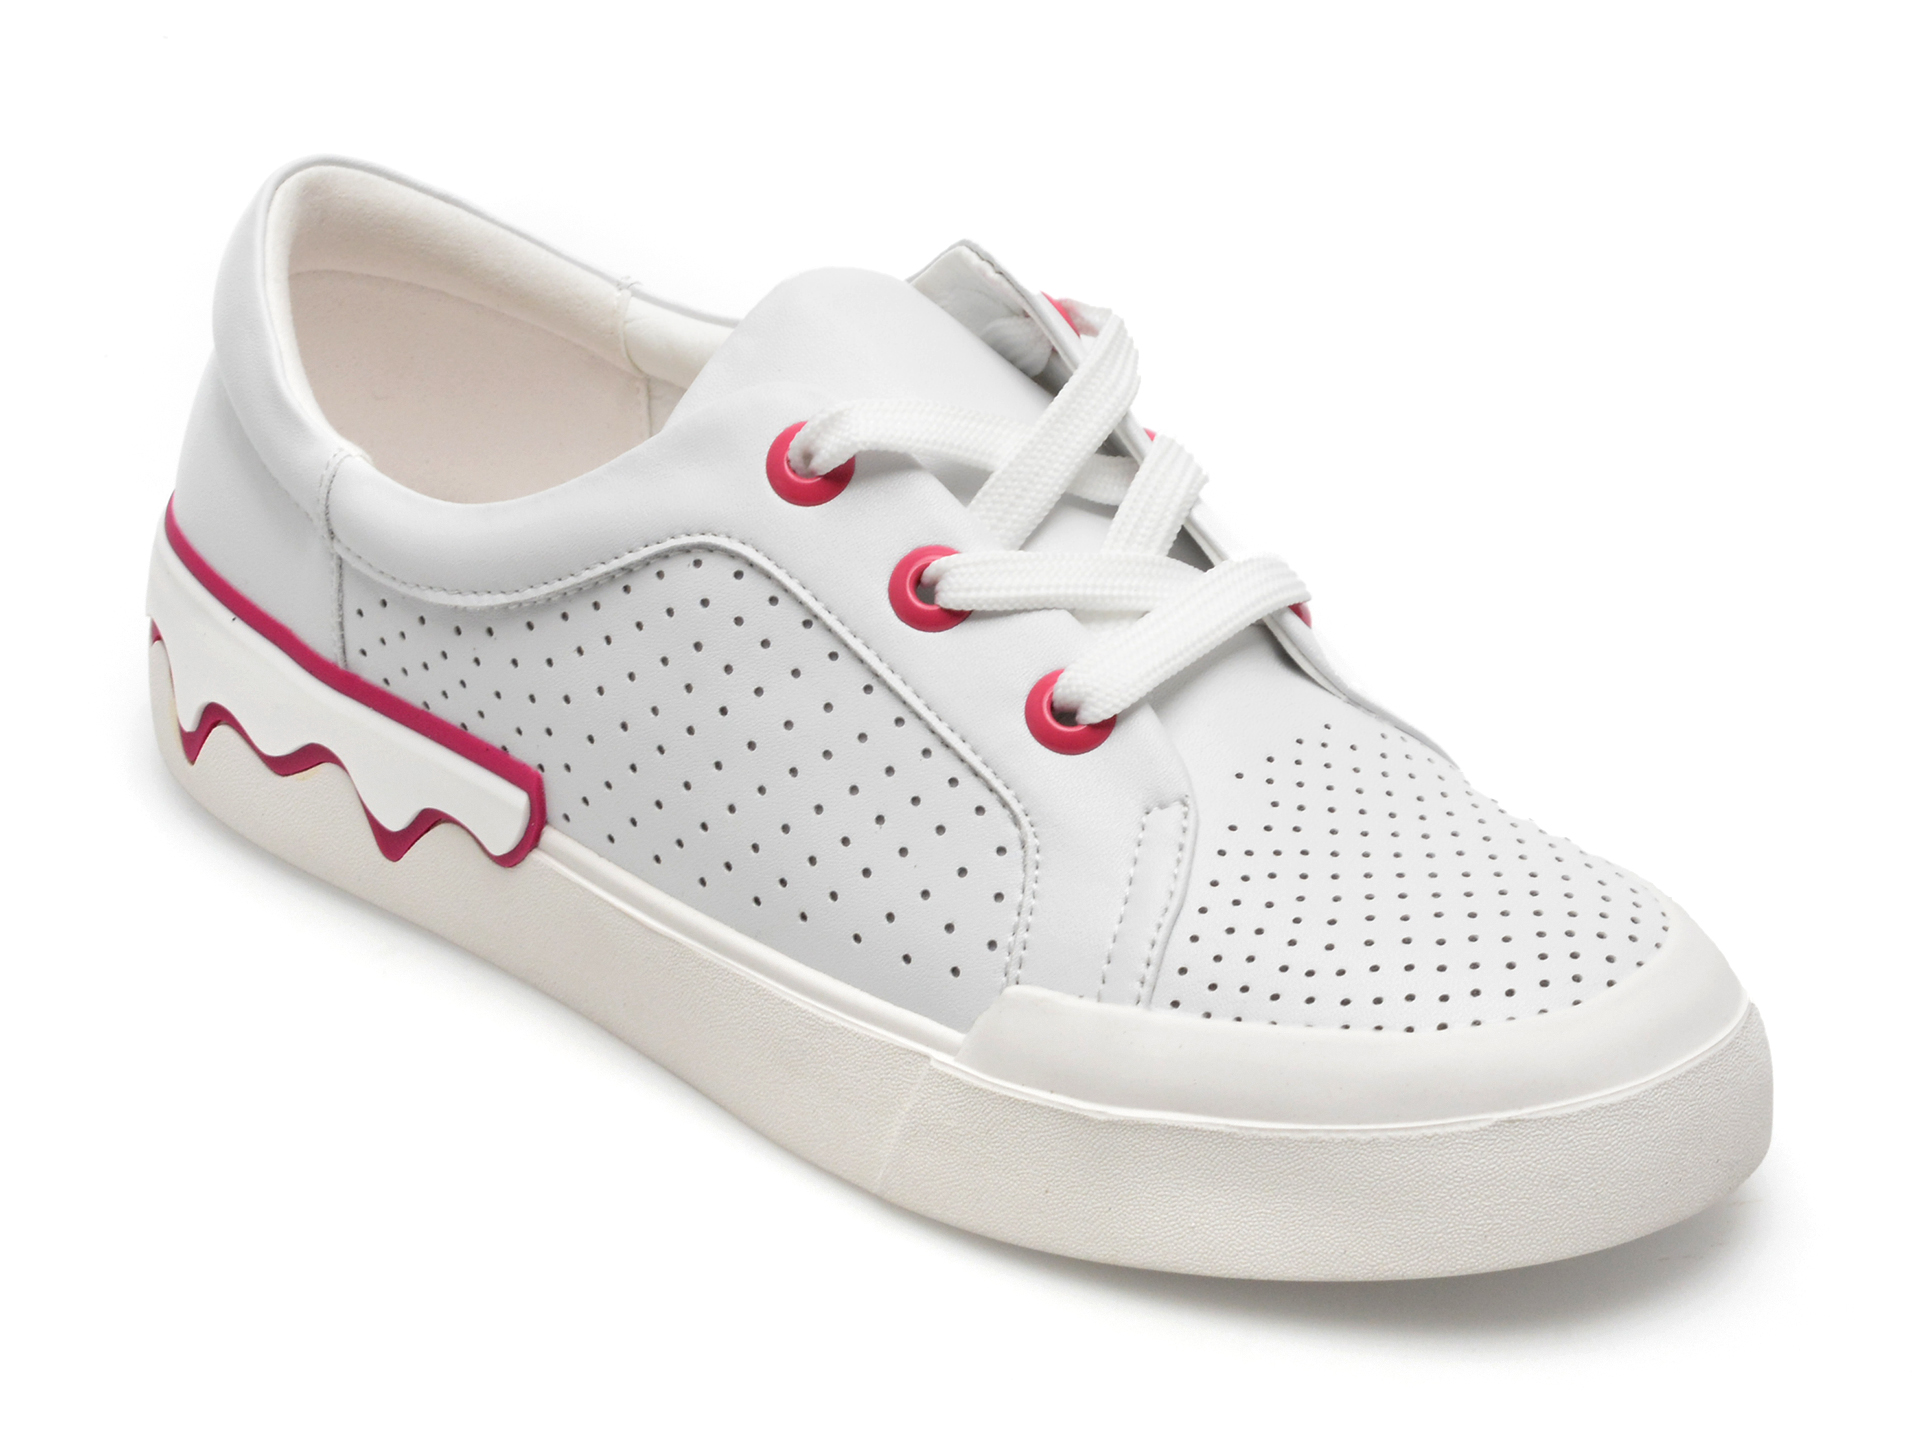 Pantofi GRYXX albi, KD561, din piele naturala Answear 2023-06-05